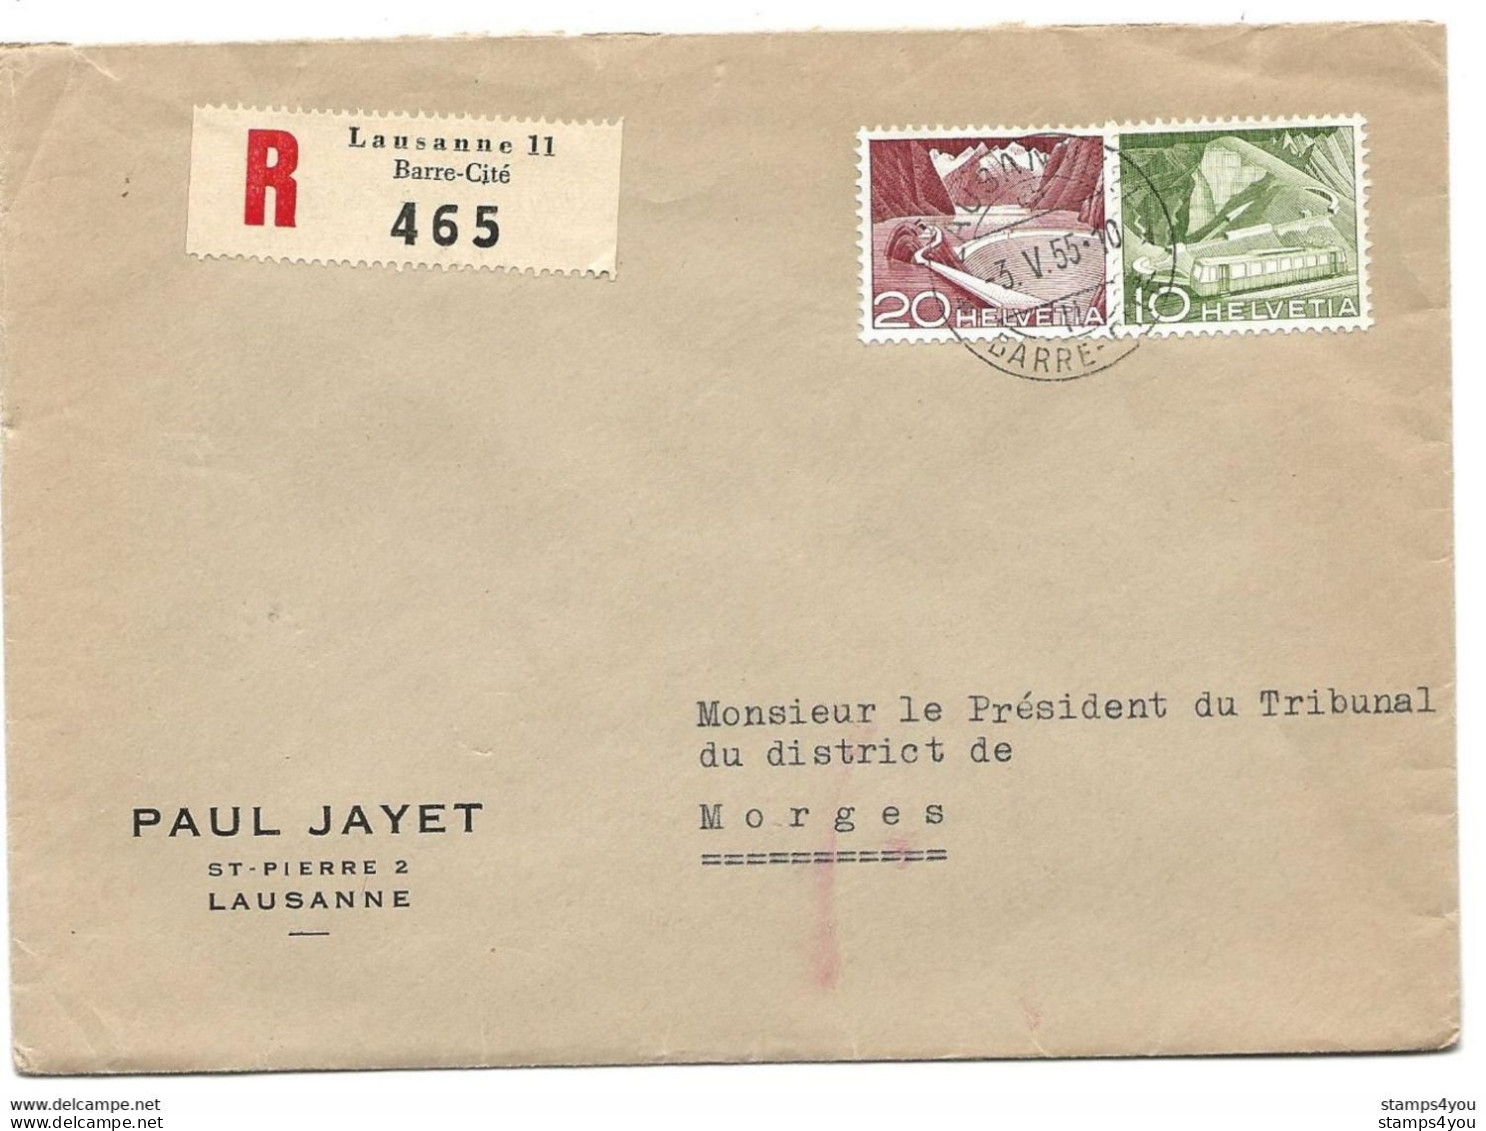 115 - 22 - Enveloppe Recommandée Envoyée De Lausanne  Gare-Cité 1955 - Briefe U. Dokumente